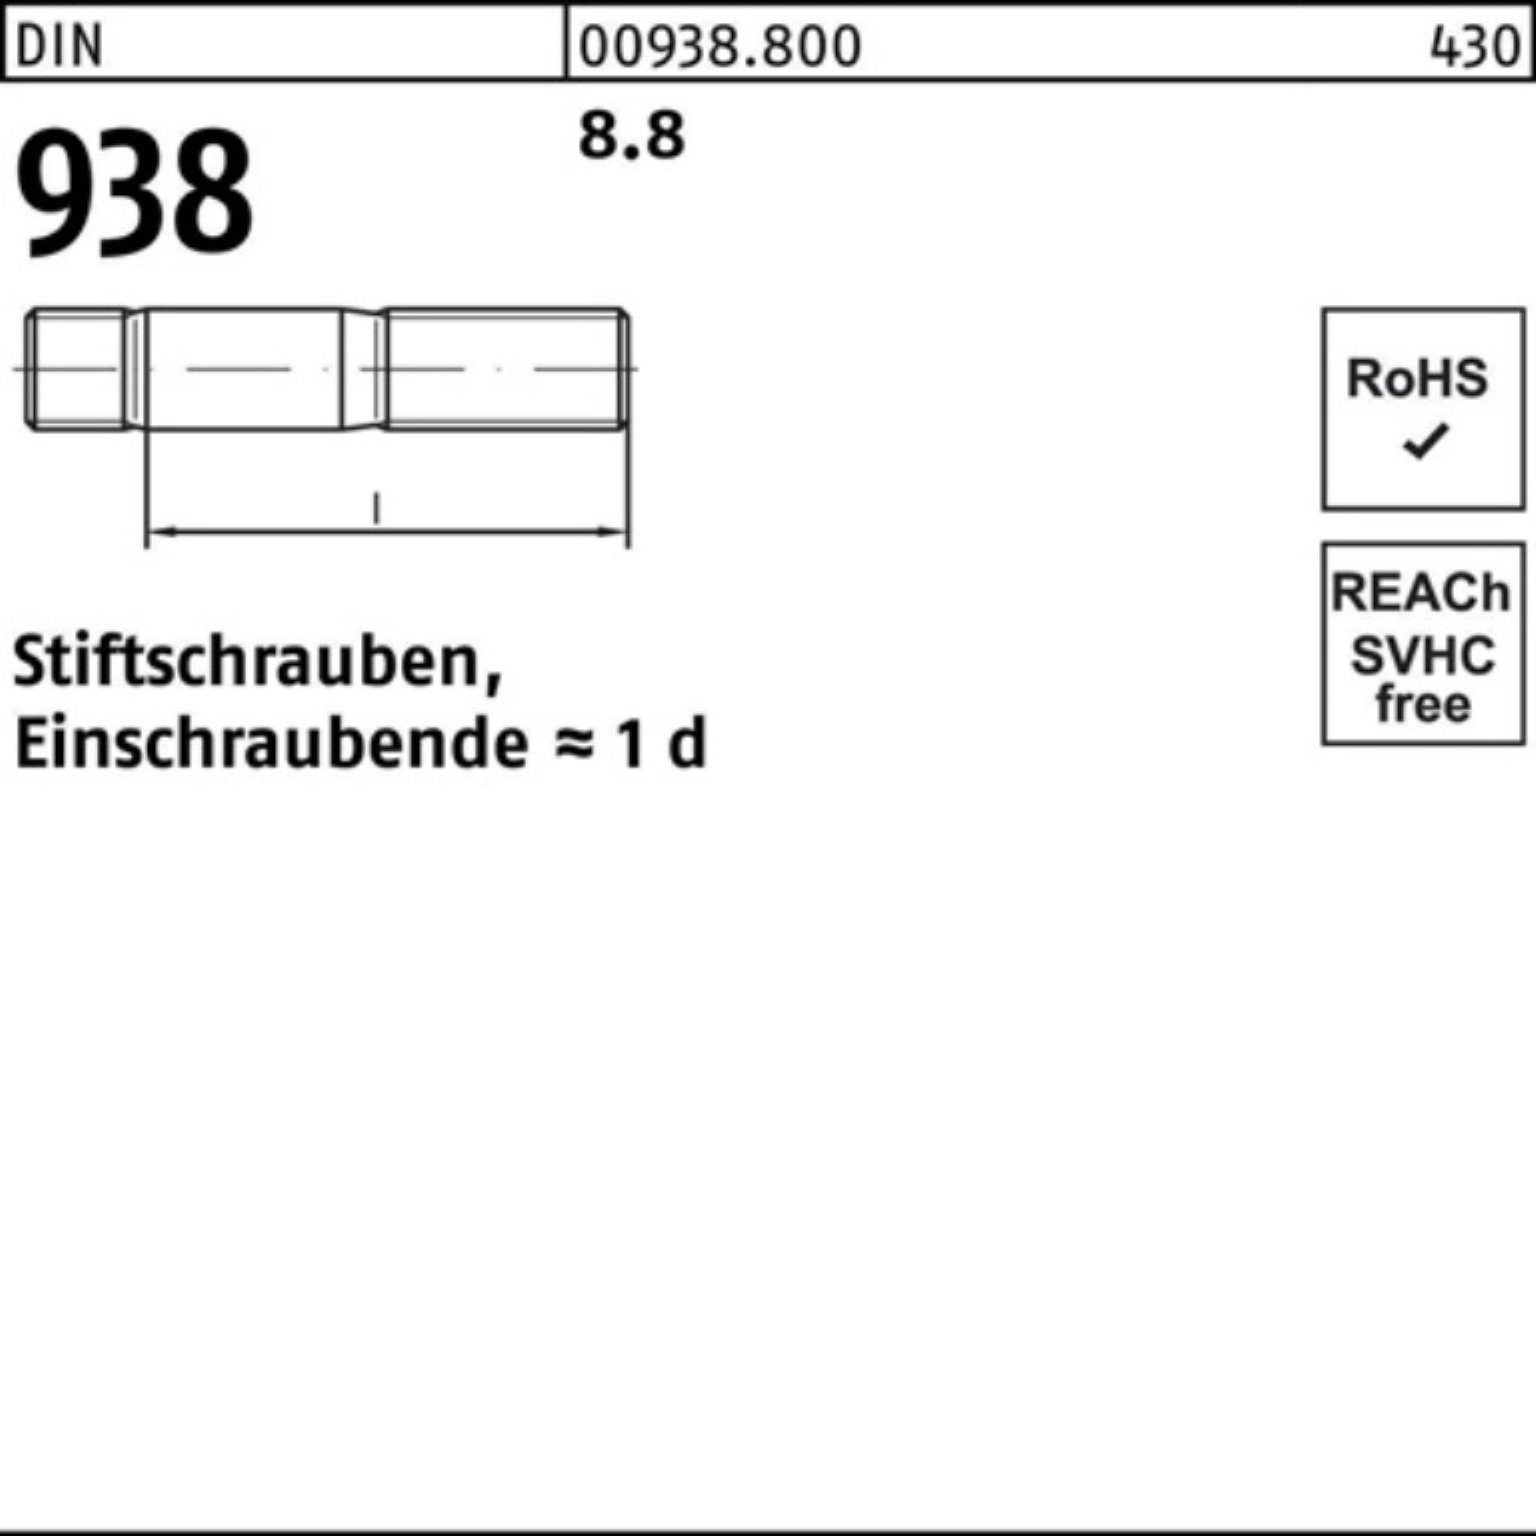 Stück Reyher Pack Stiftschraube 8.8 938 10 100er Sti 938 80 M20x DIN DIN 8.8 Stiftschraube